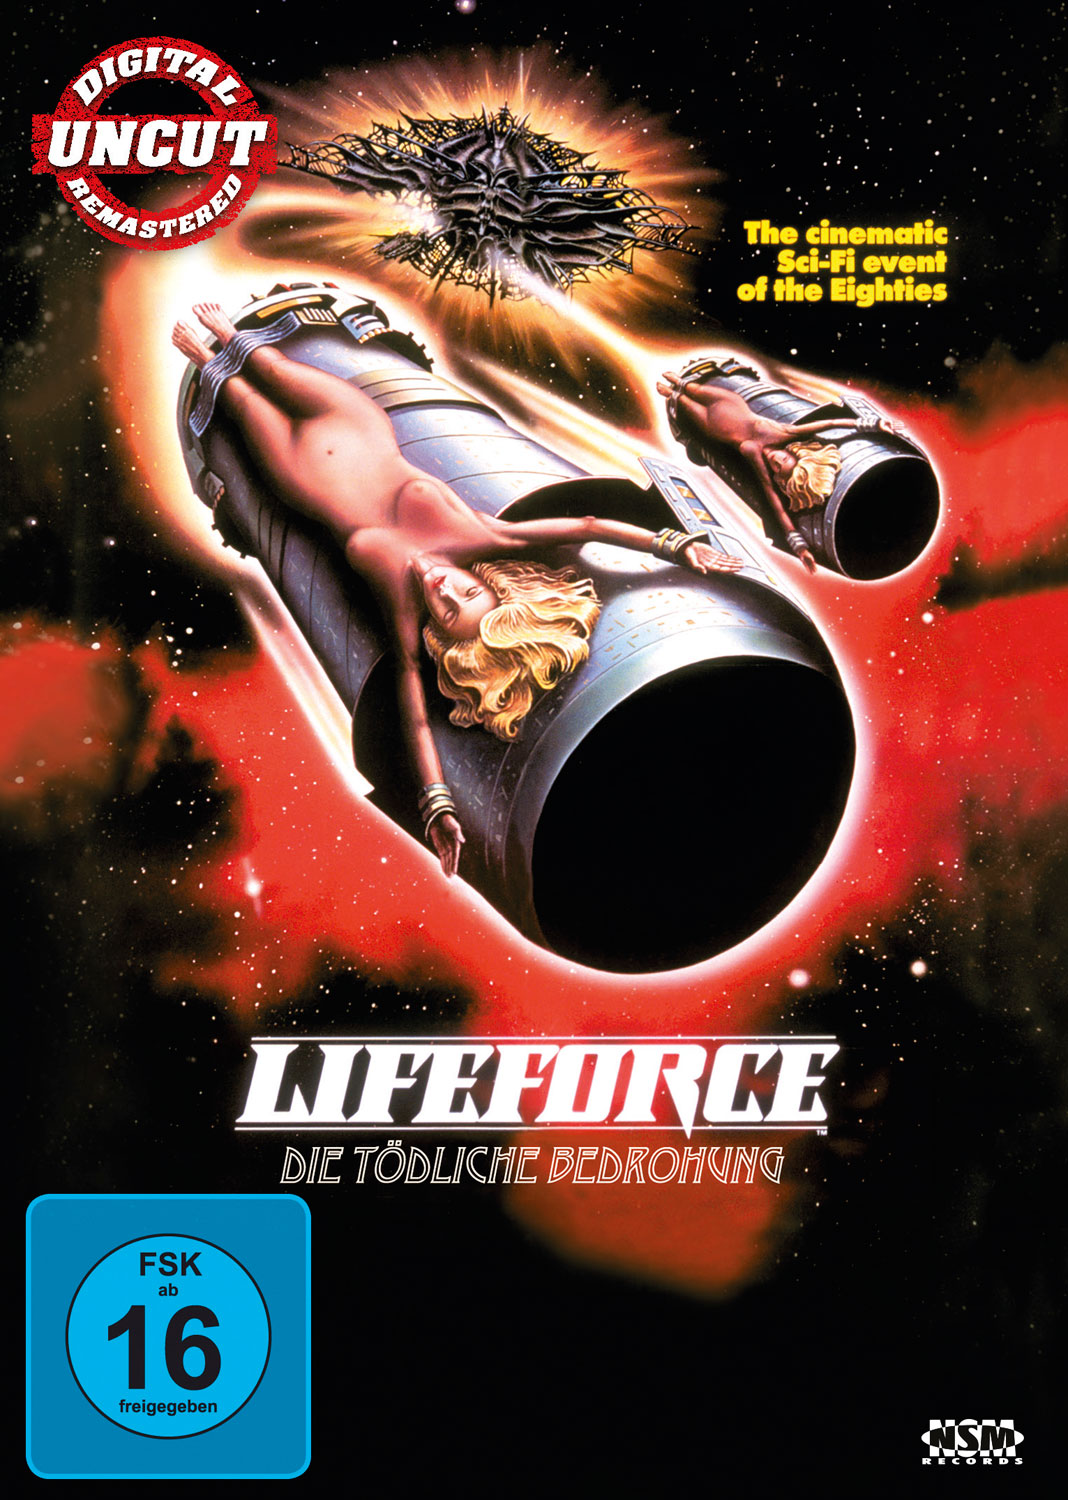 Bedrohung Lifeforce tödliche - Die DVD